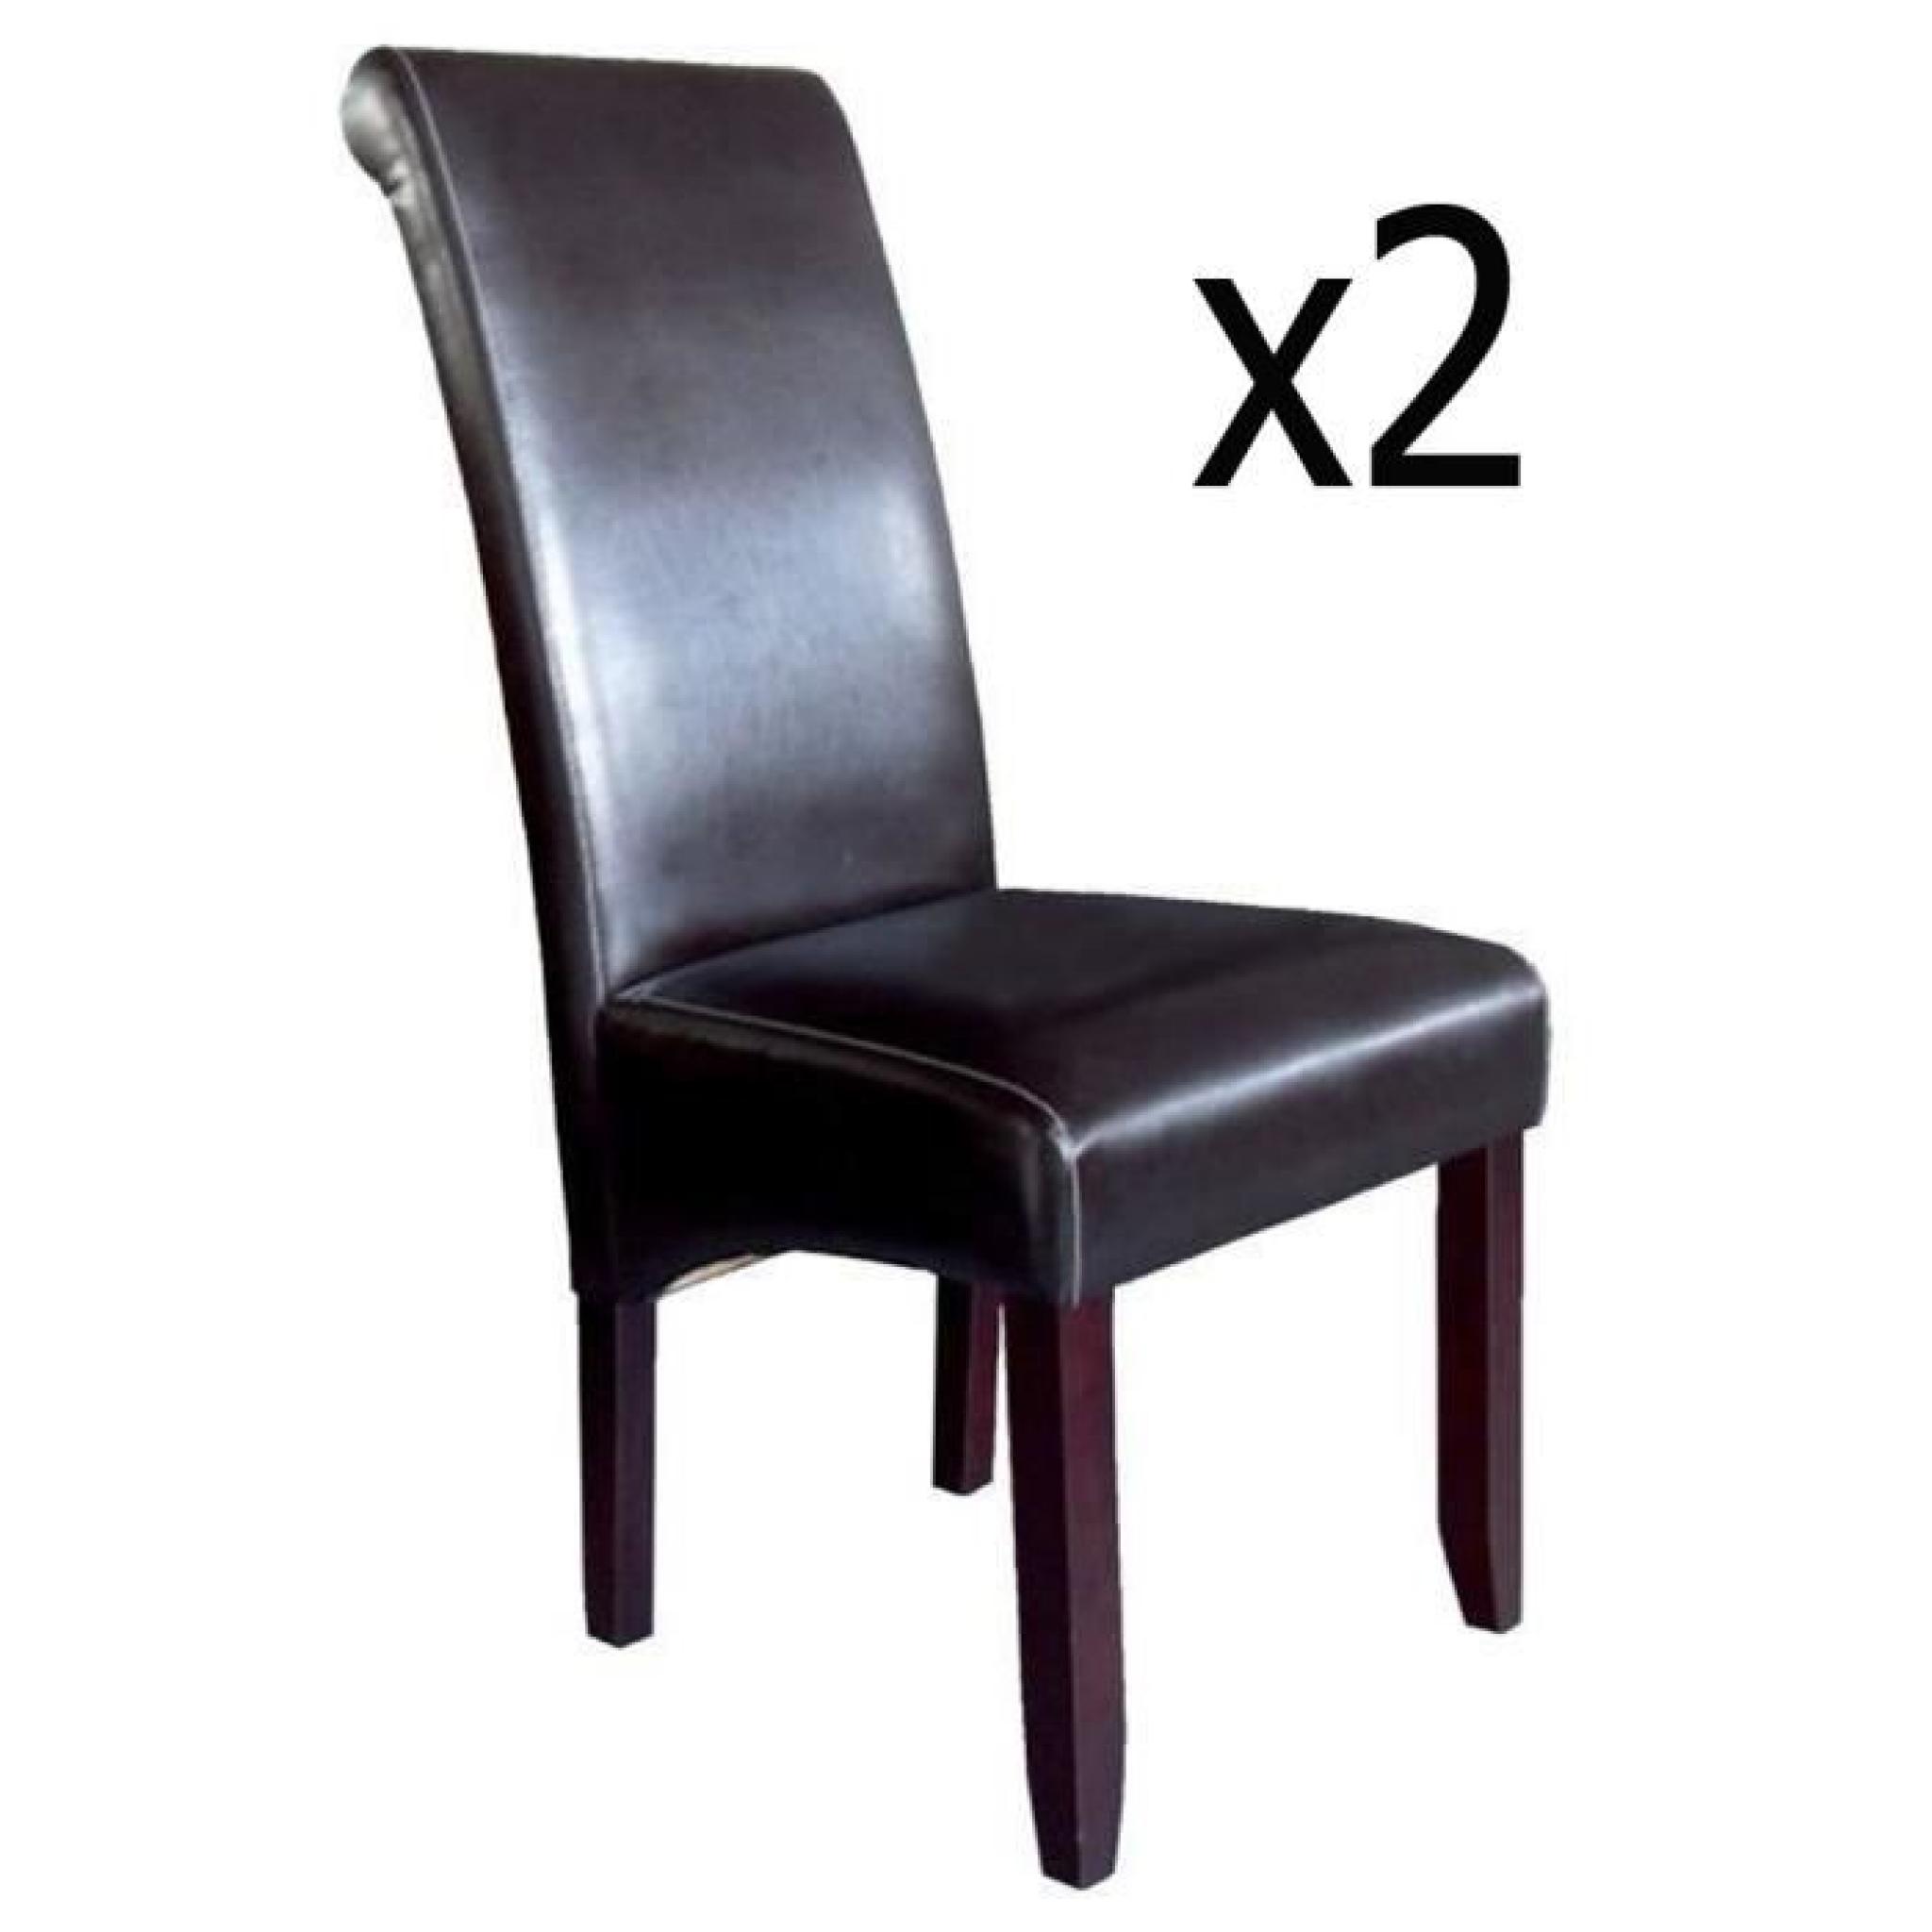 Lot de 2 chaises pour salle à manger dark brown - brown, 49 x 106 x 66 cm